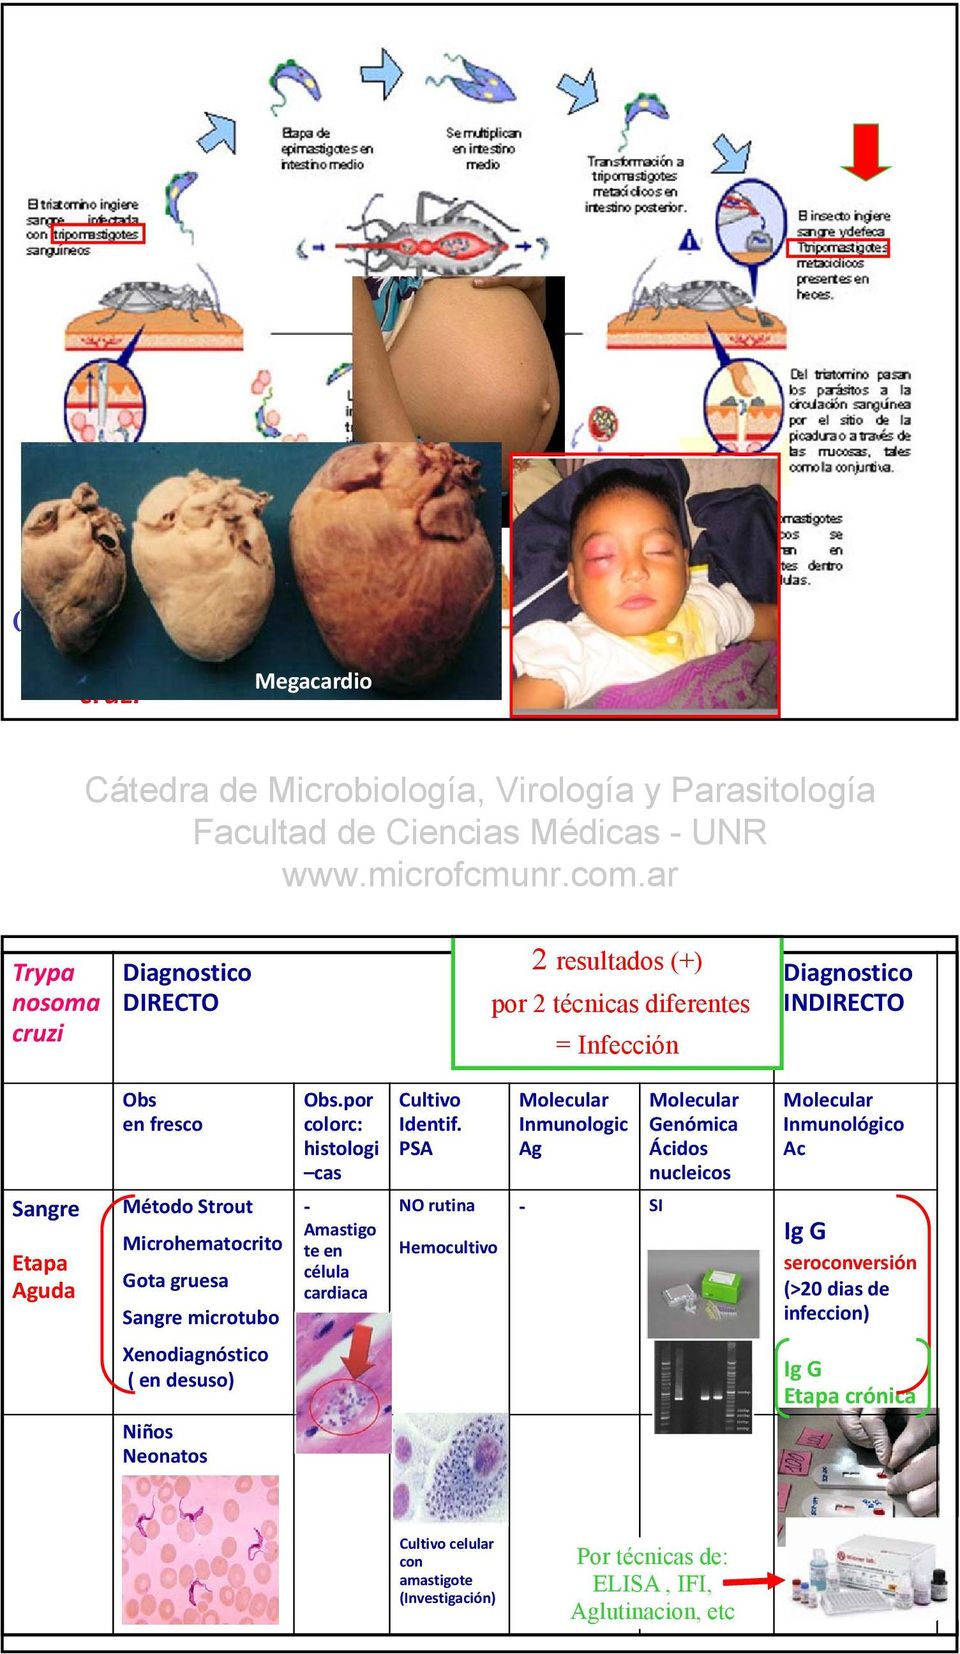 por colorc: histologi cas Amastigo te en célula cardiaca Cultivo Identif.